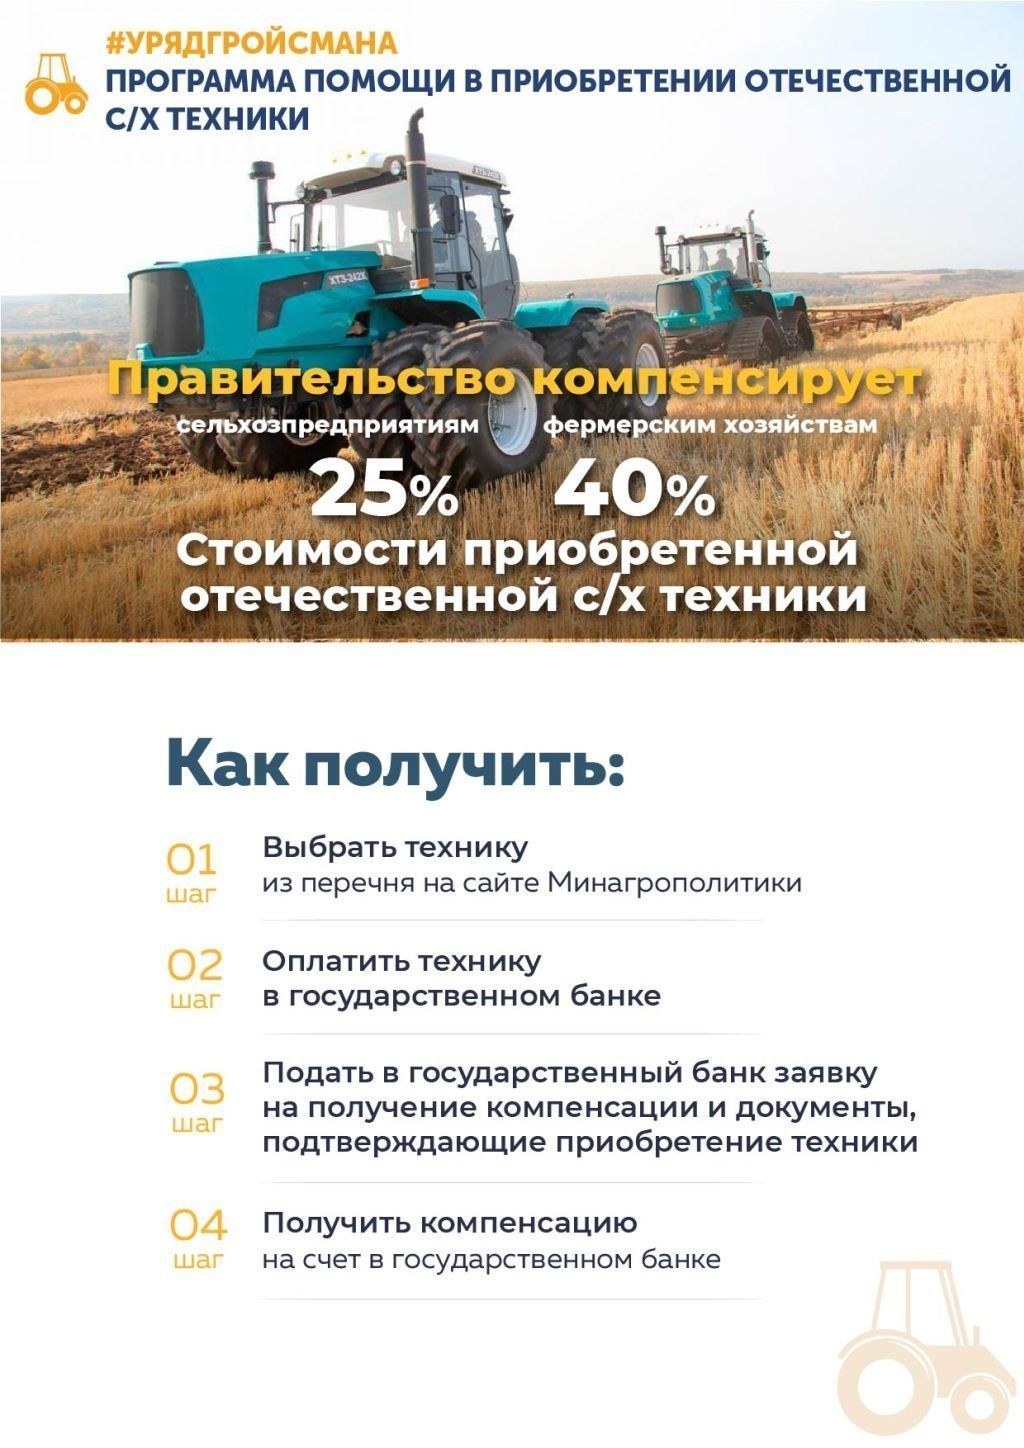 Правительство Владимира Гройсмана заботится о развитии сельского хозяйства